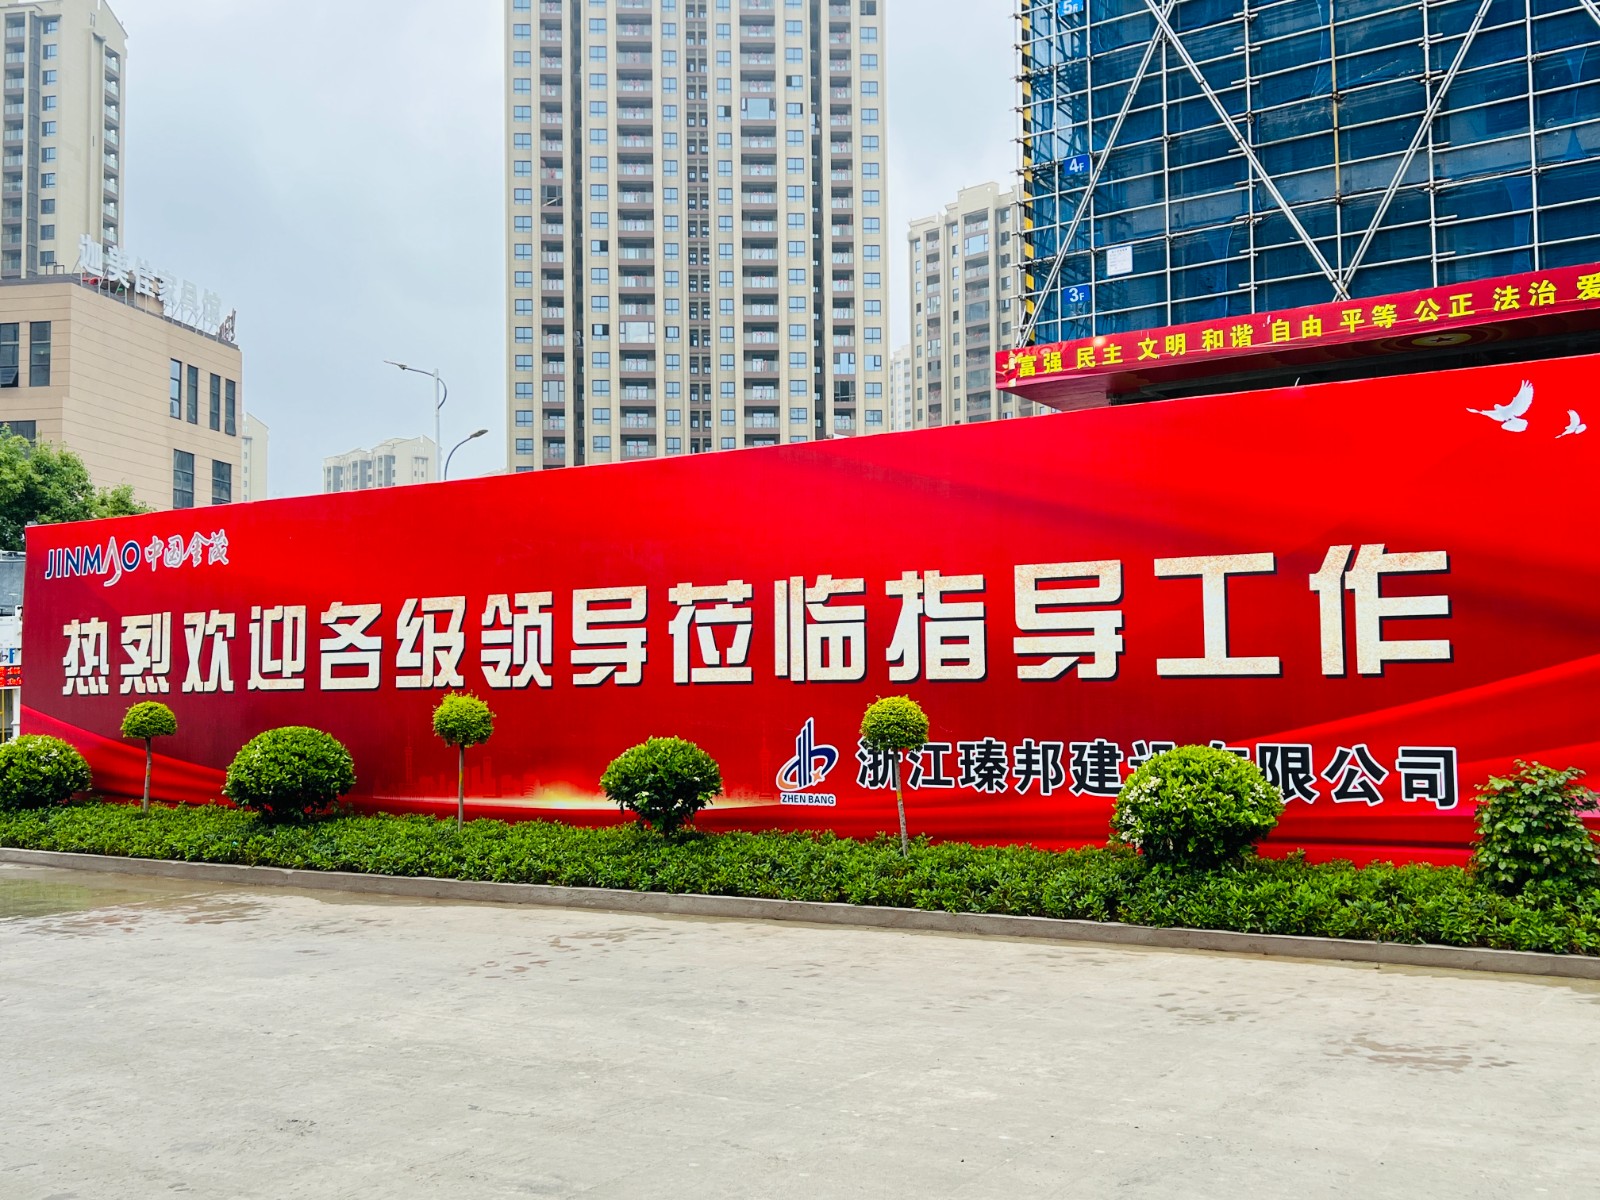 天津浙江金茂与上海博普LOFT专利车库的结合碰撞，再创明星楼盘。